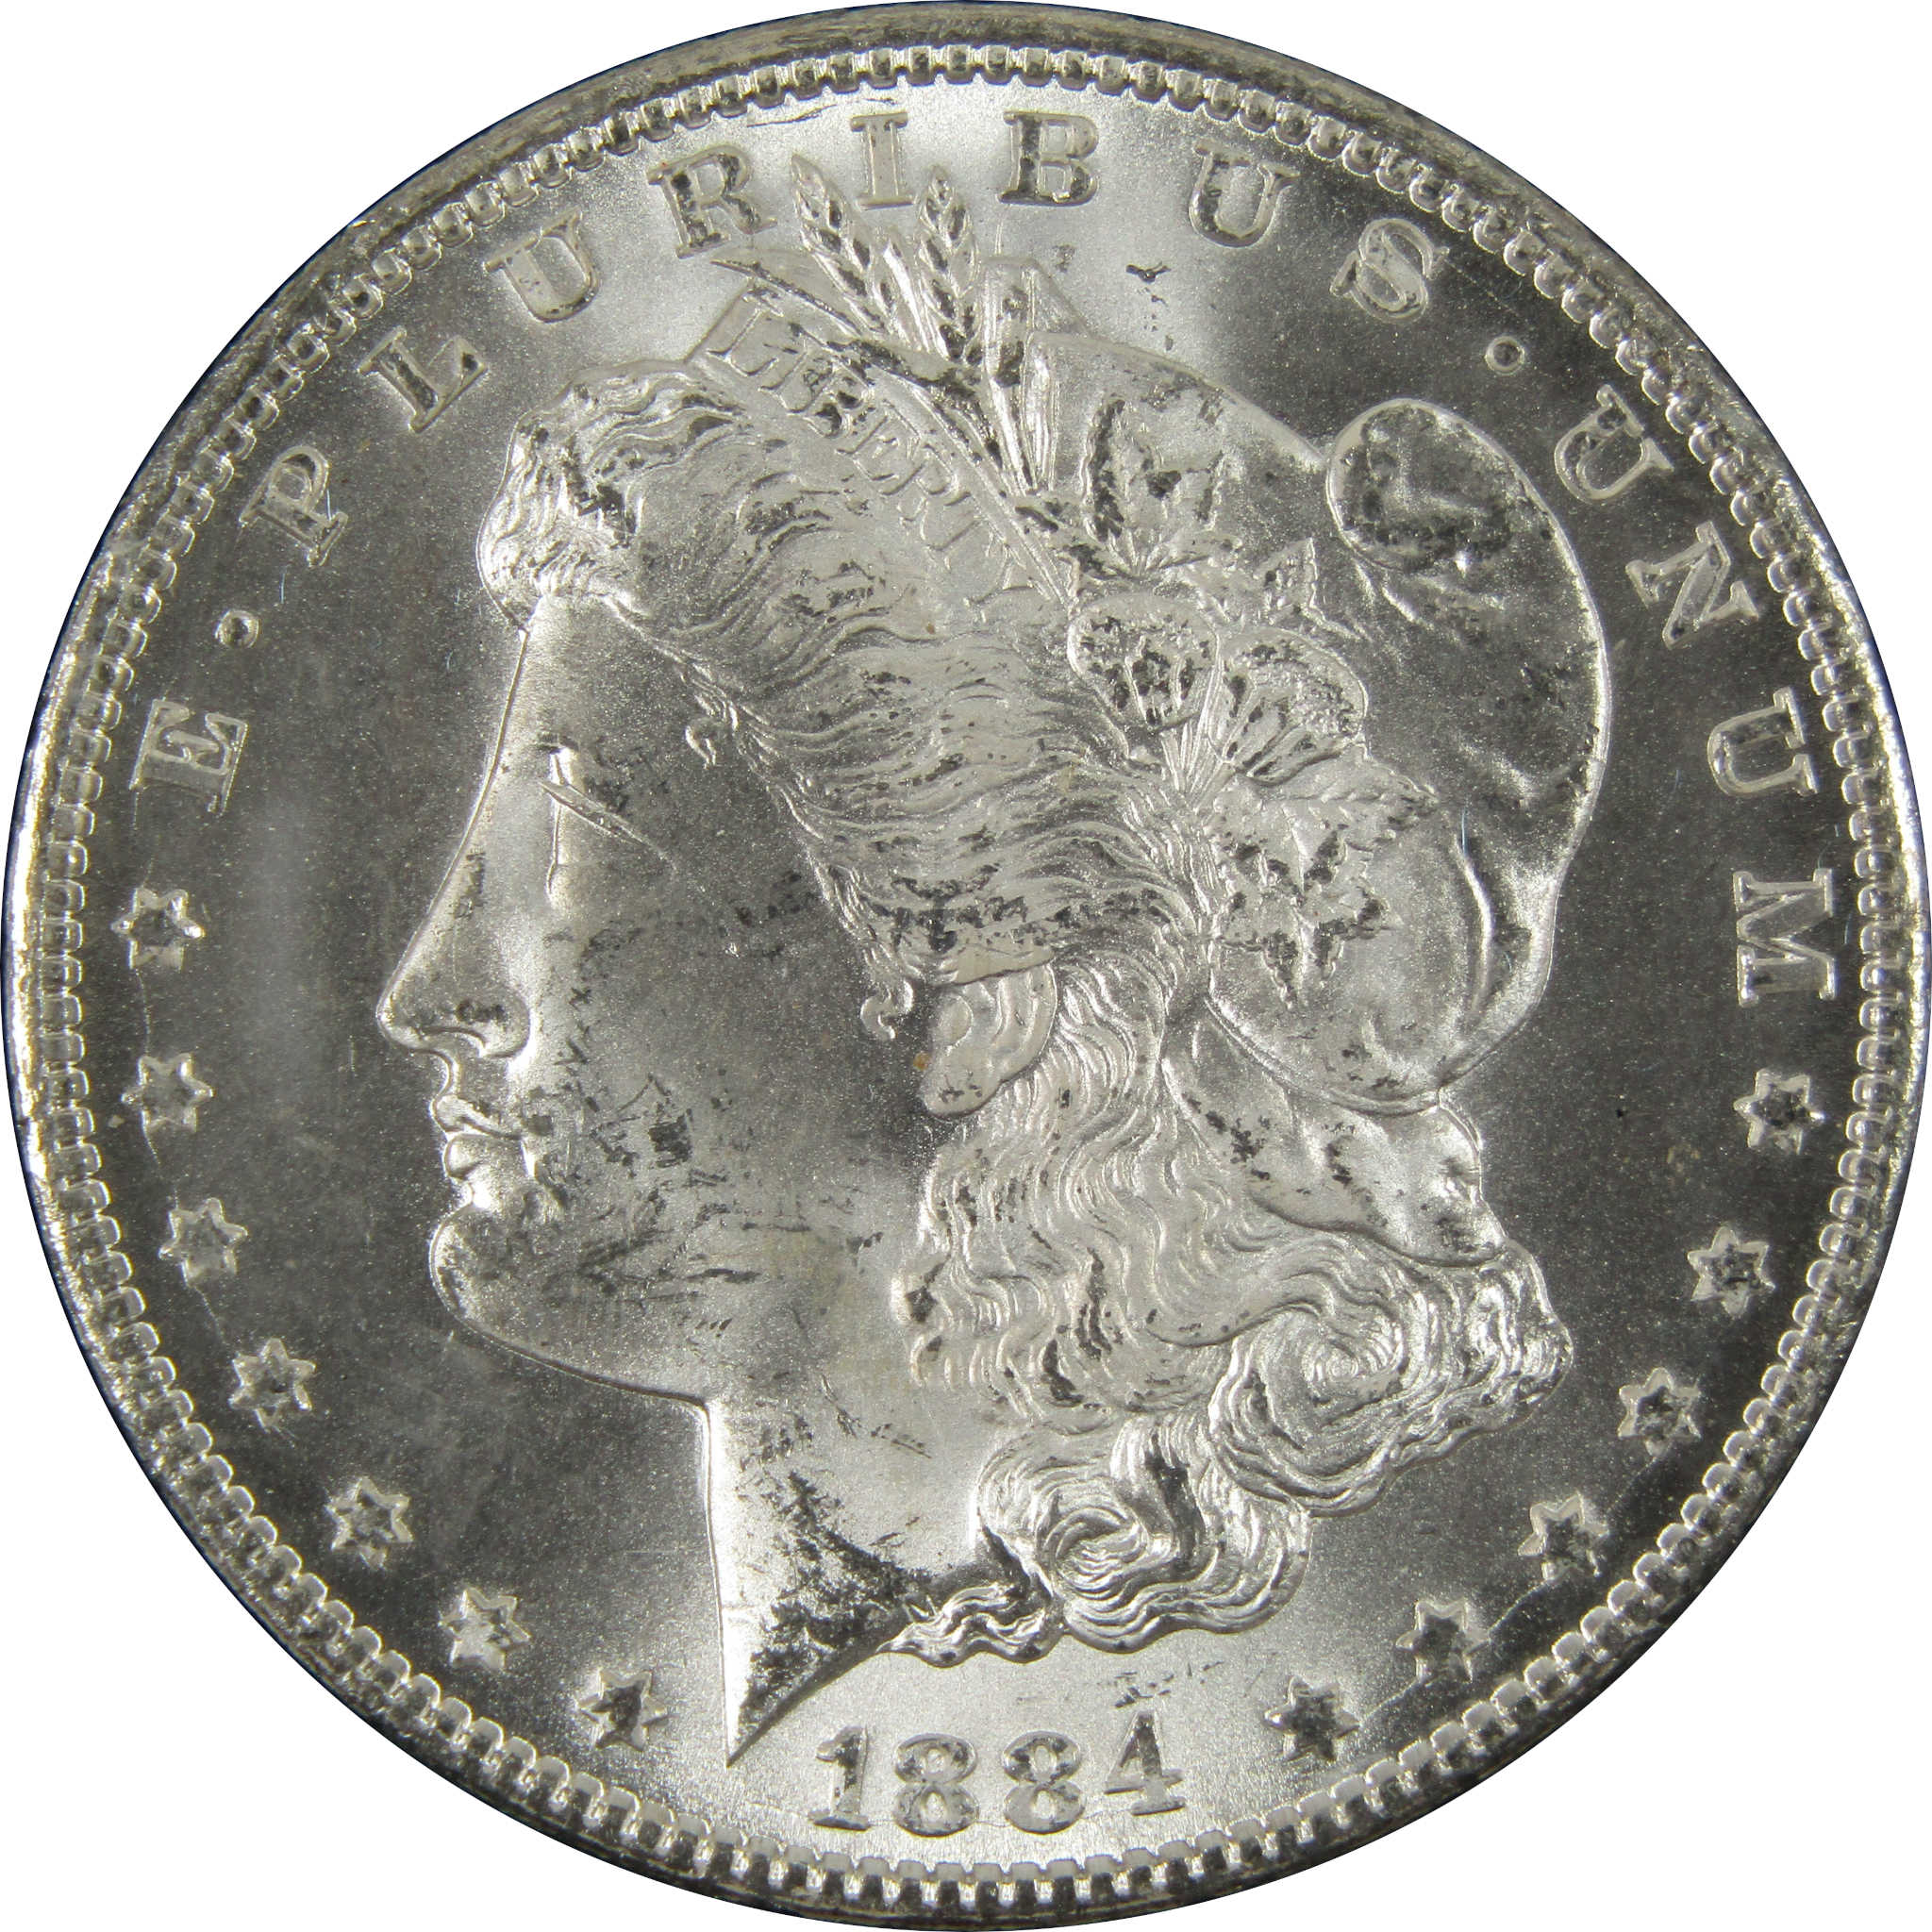 1884 CC GSA Morgan Dollar BU Uncirculated Silver $1 Coin SKU:I9859 - Morgan coin - Morgan silver dollar - Morgan silver dollar for sale - Profile Coins &amp; Collectibles